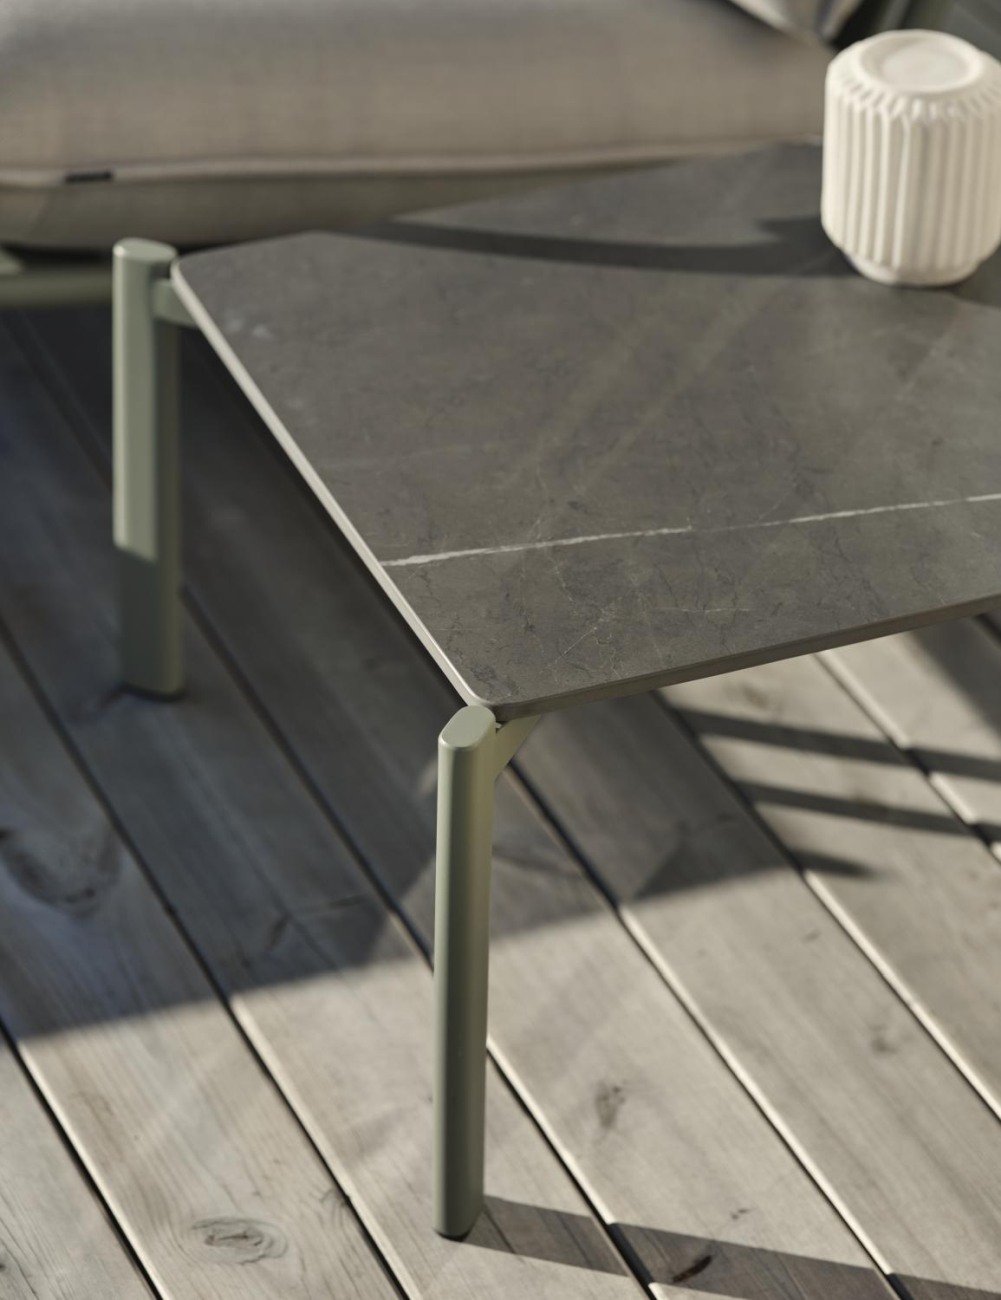 Der Gartencouchtisch Gotland überzeugt mit seinem modernen Design. Gefertigt wurde die Tischplatte aus Granit und besitzt einen grauen Farbton. Das Gestell ist auch aus Metall und hat eine grüne Farbe. Der Tisch besitzt eine Länger von 56 cm.